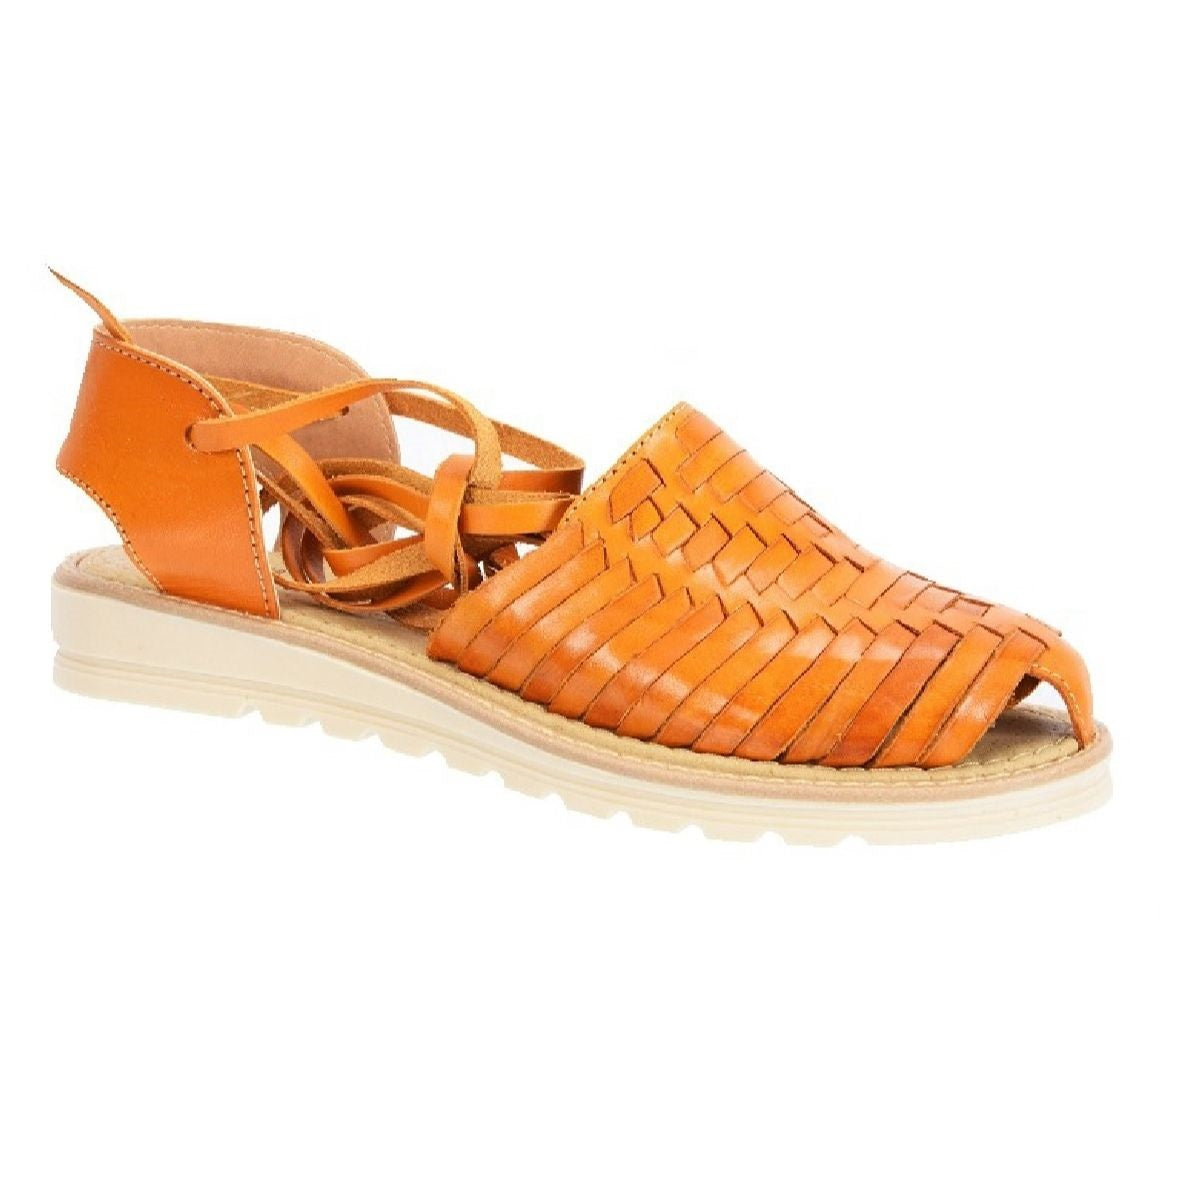 Huaraches Artesanales TM-35253 - Leather Sandals